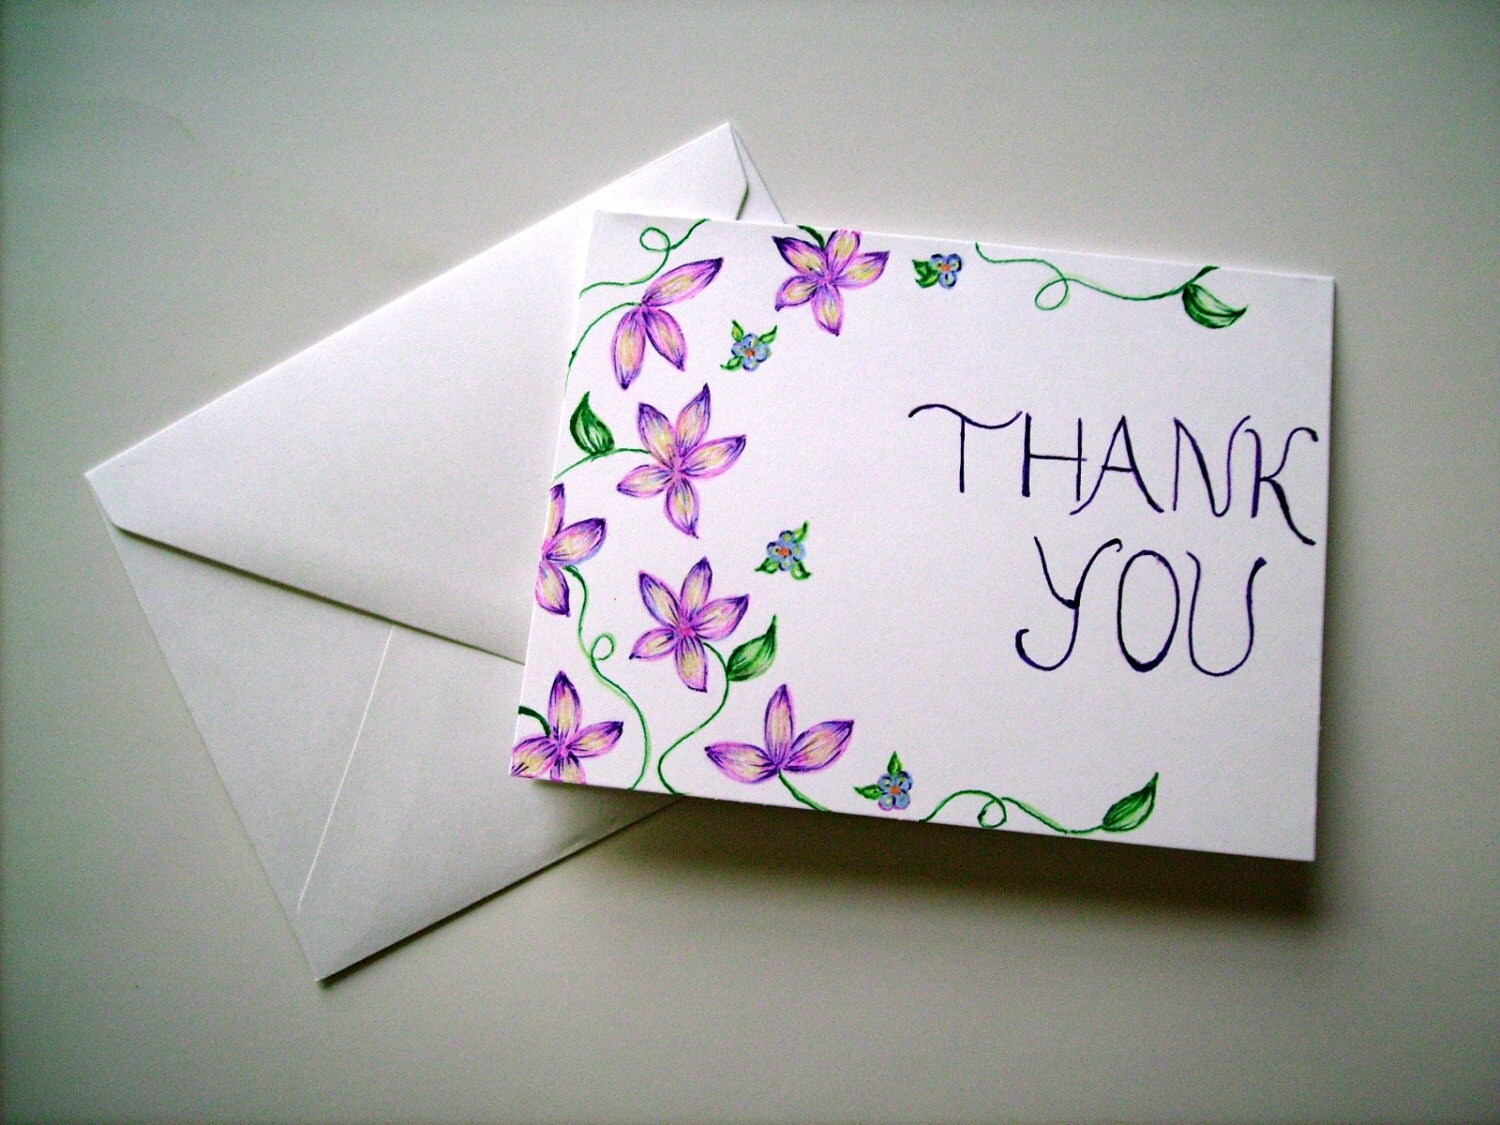 Thank you card. Thank you Greeting Cards. Картинки Greetings Cards. תודה רבה. Открытка. Спасибо в конверте картинки.